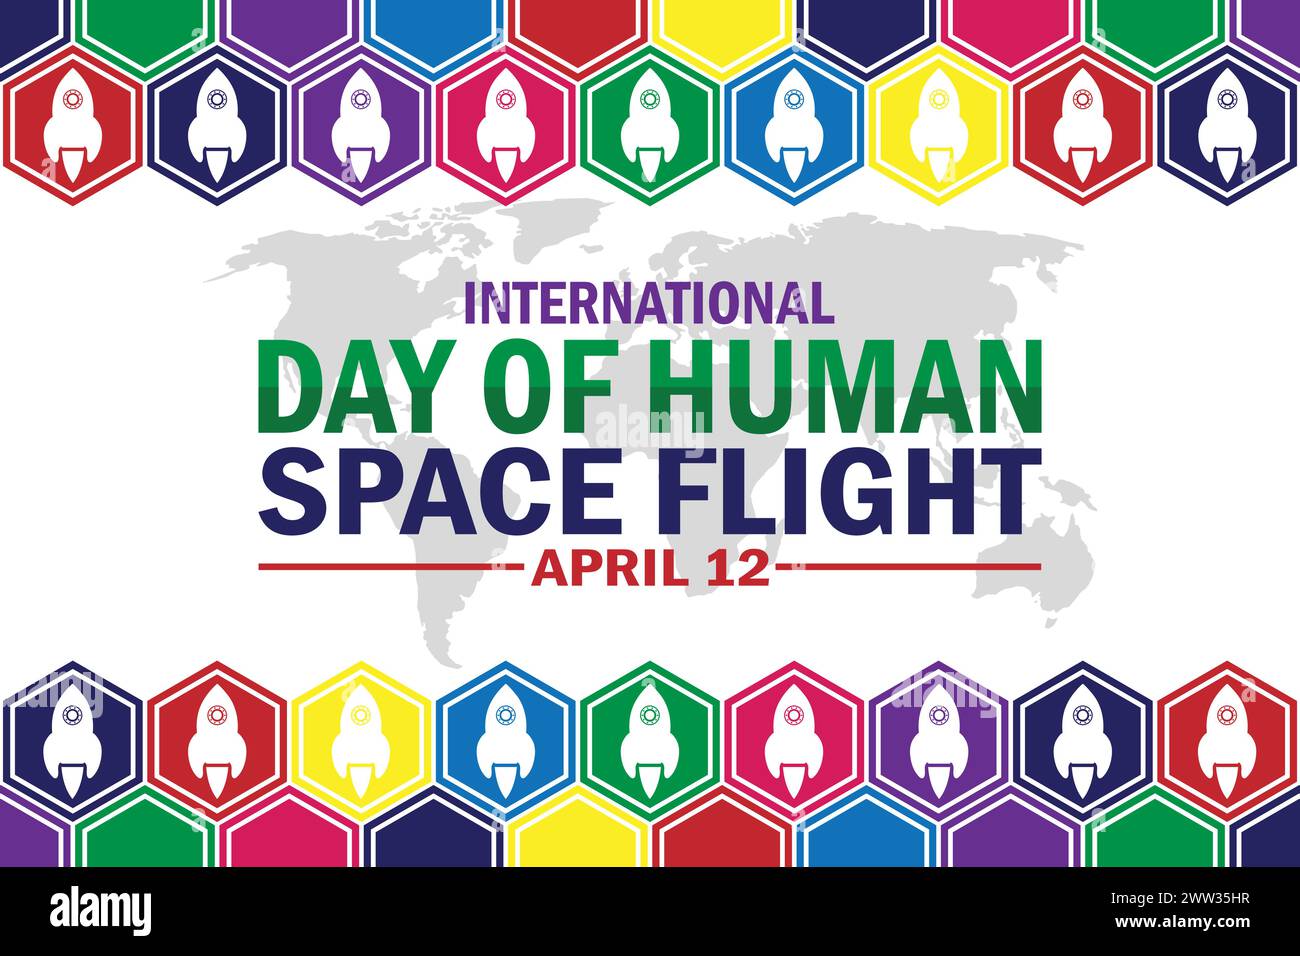 Fondo de pantalla del Día Internacional del Vuelo Espacial Humano con tipografía. Día Internacional del Vuelo Espacial Humano, fondo Ilustración del Vector